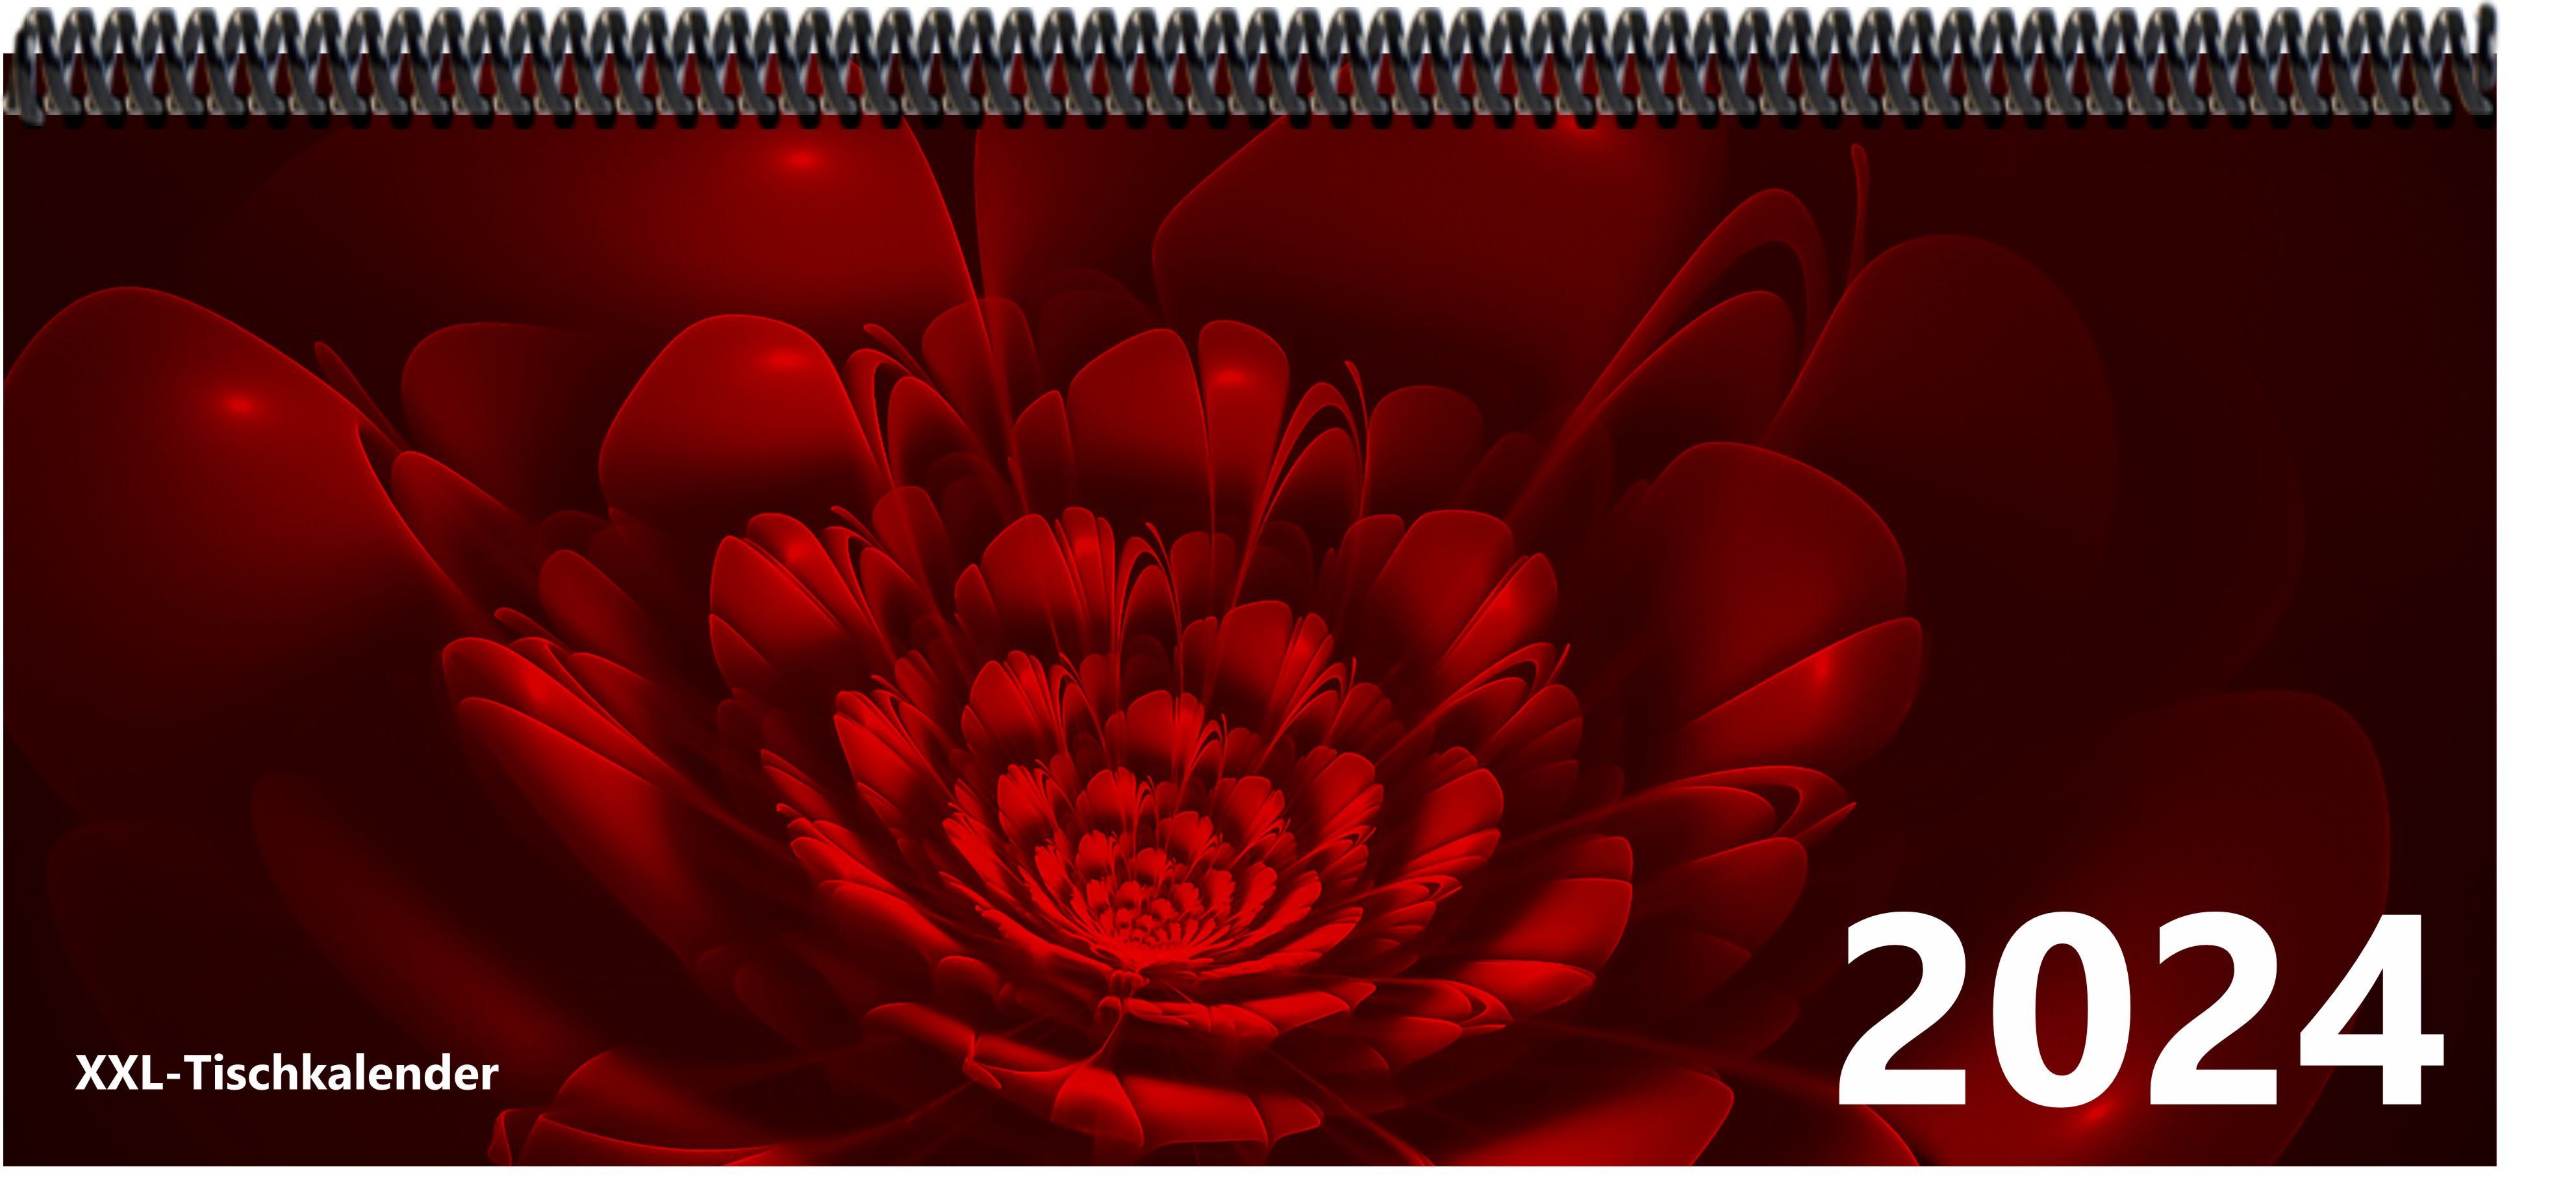 E&Z Verlag Gmbh Schreibtischkalender Bunt - Kalender XXL 2024 mit dem Muster Blume rot